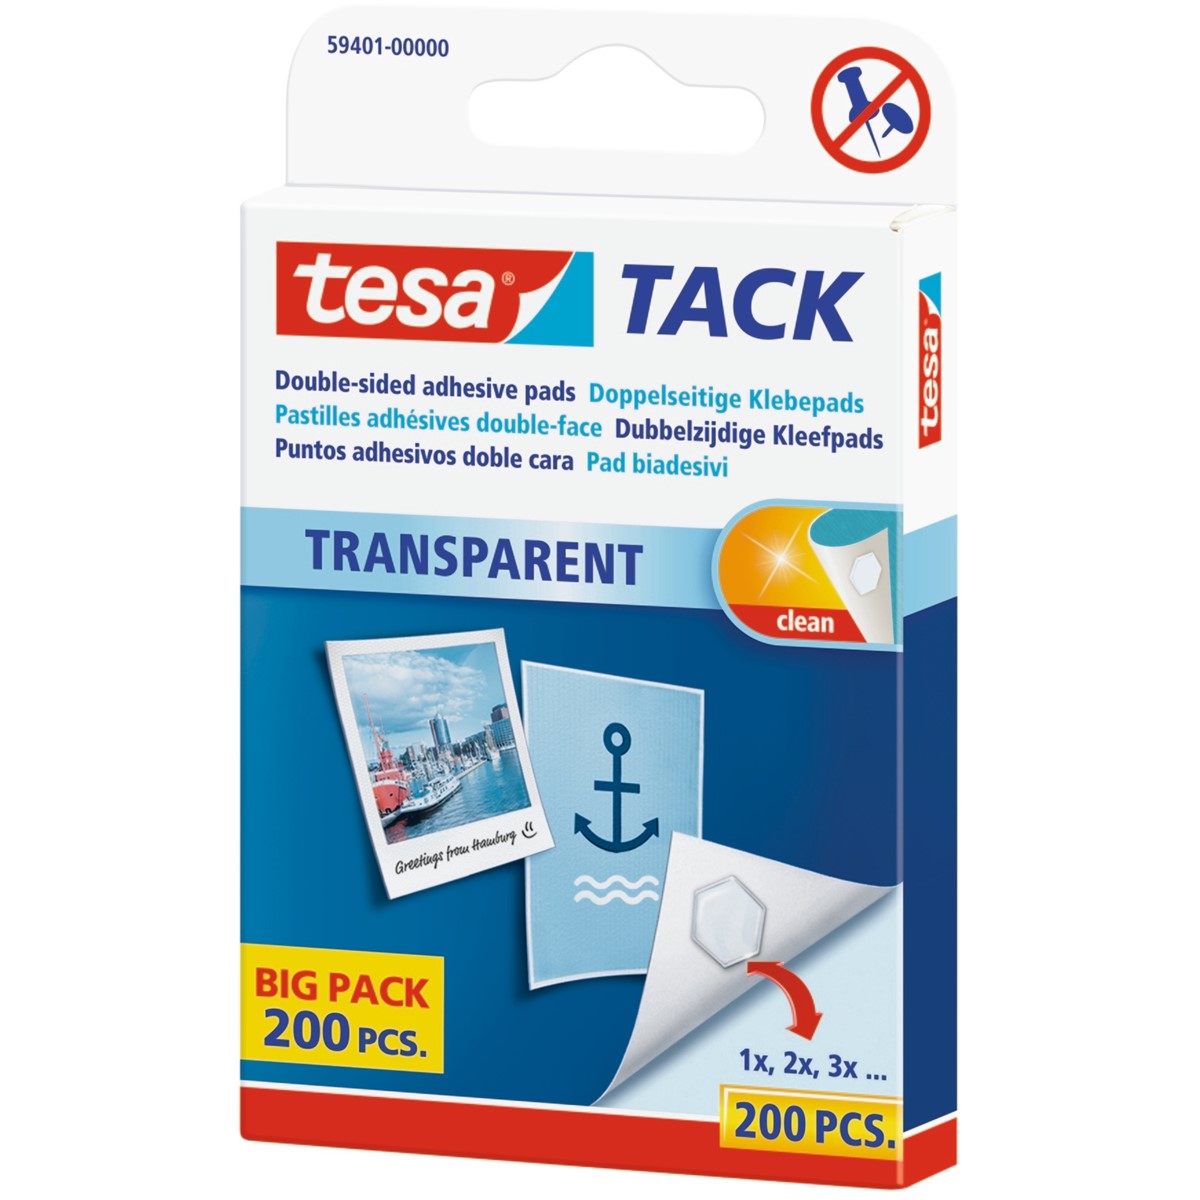 TESA TACK doppelseitige Klebepads transparent, 3,06 €